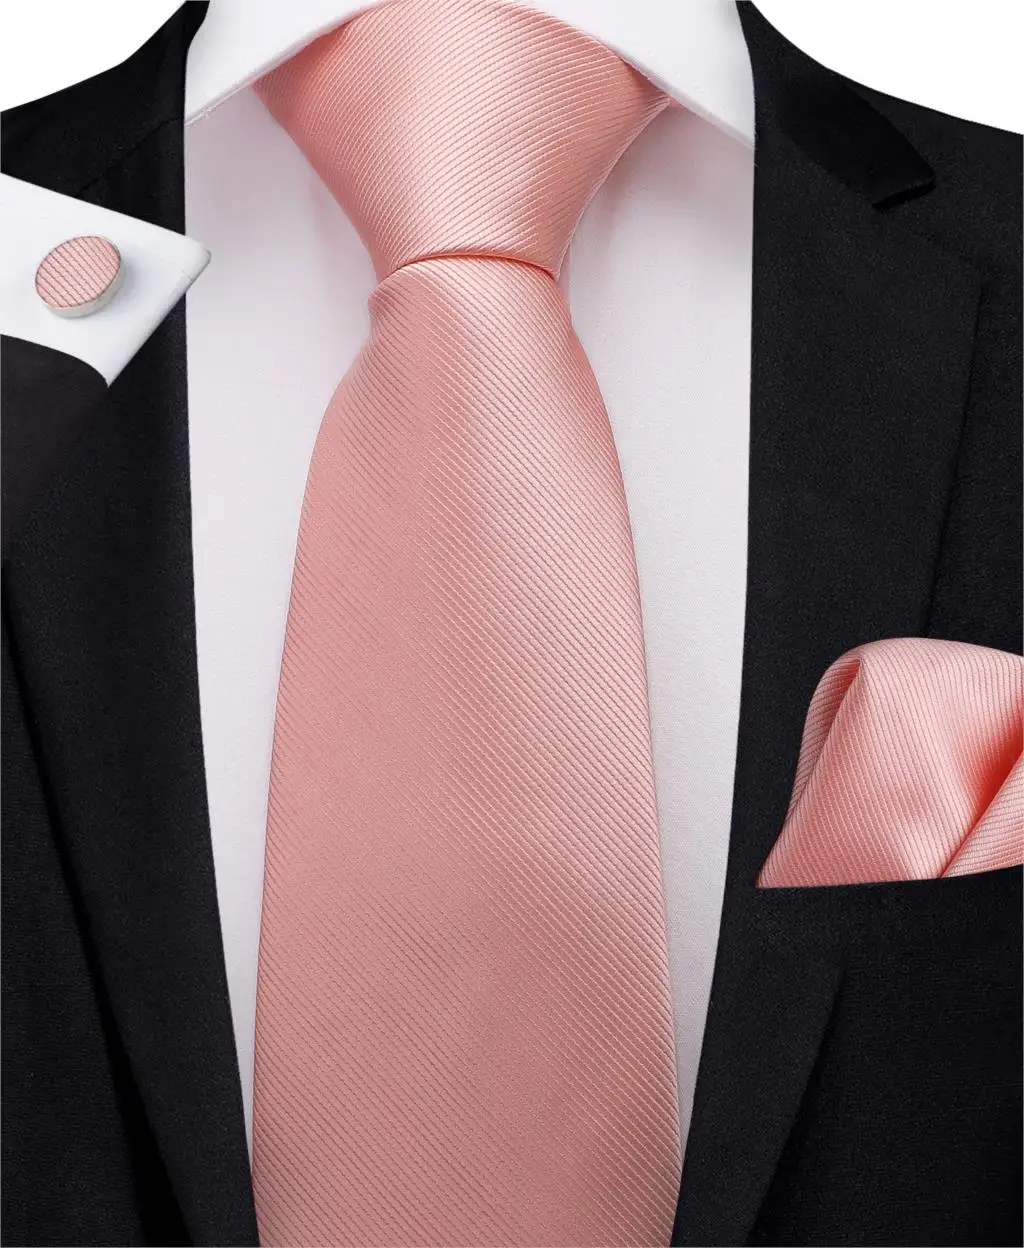 DiBanGu модный персиковый розовый мужской подарок зажим для галстука Hanky запонки галстук 150 см длинный галстук для мужчин Свадебный вечерний деловой галстук набор MJ-7195 - Цвет: MJ-7242